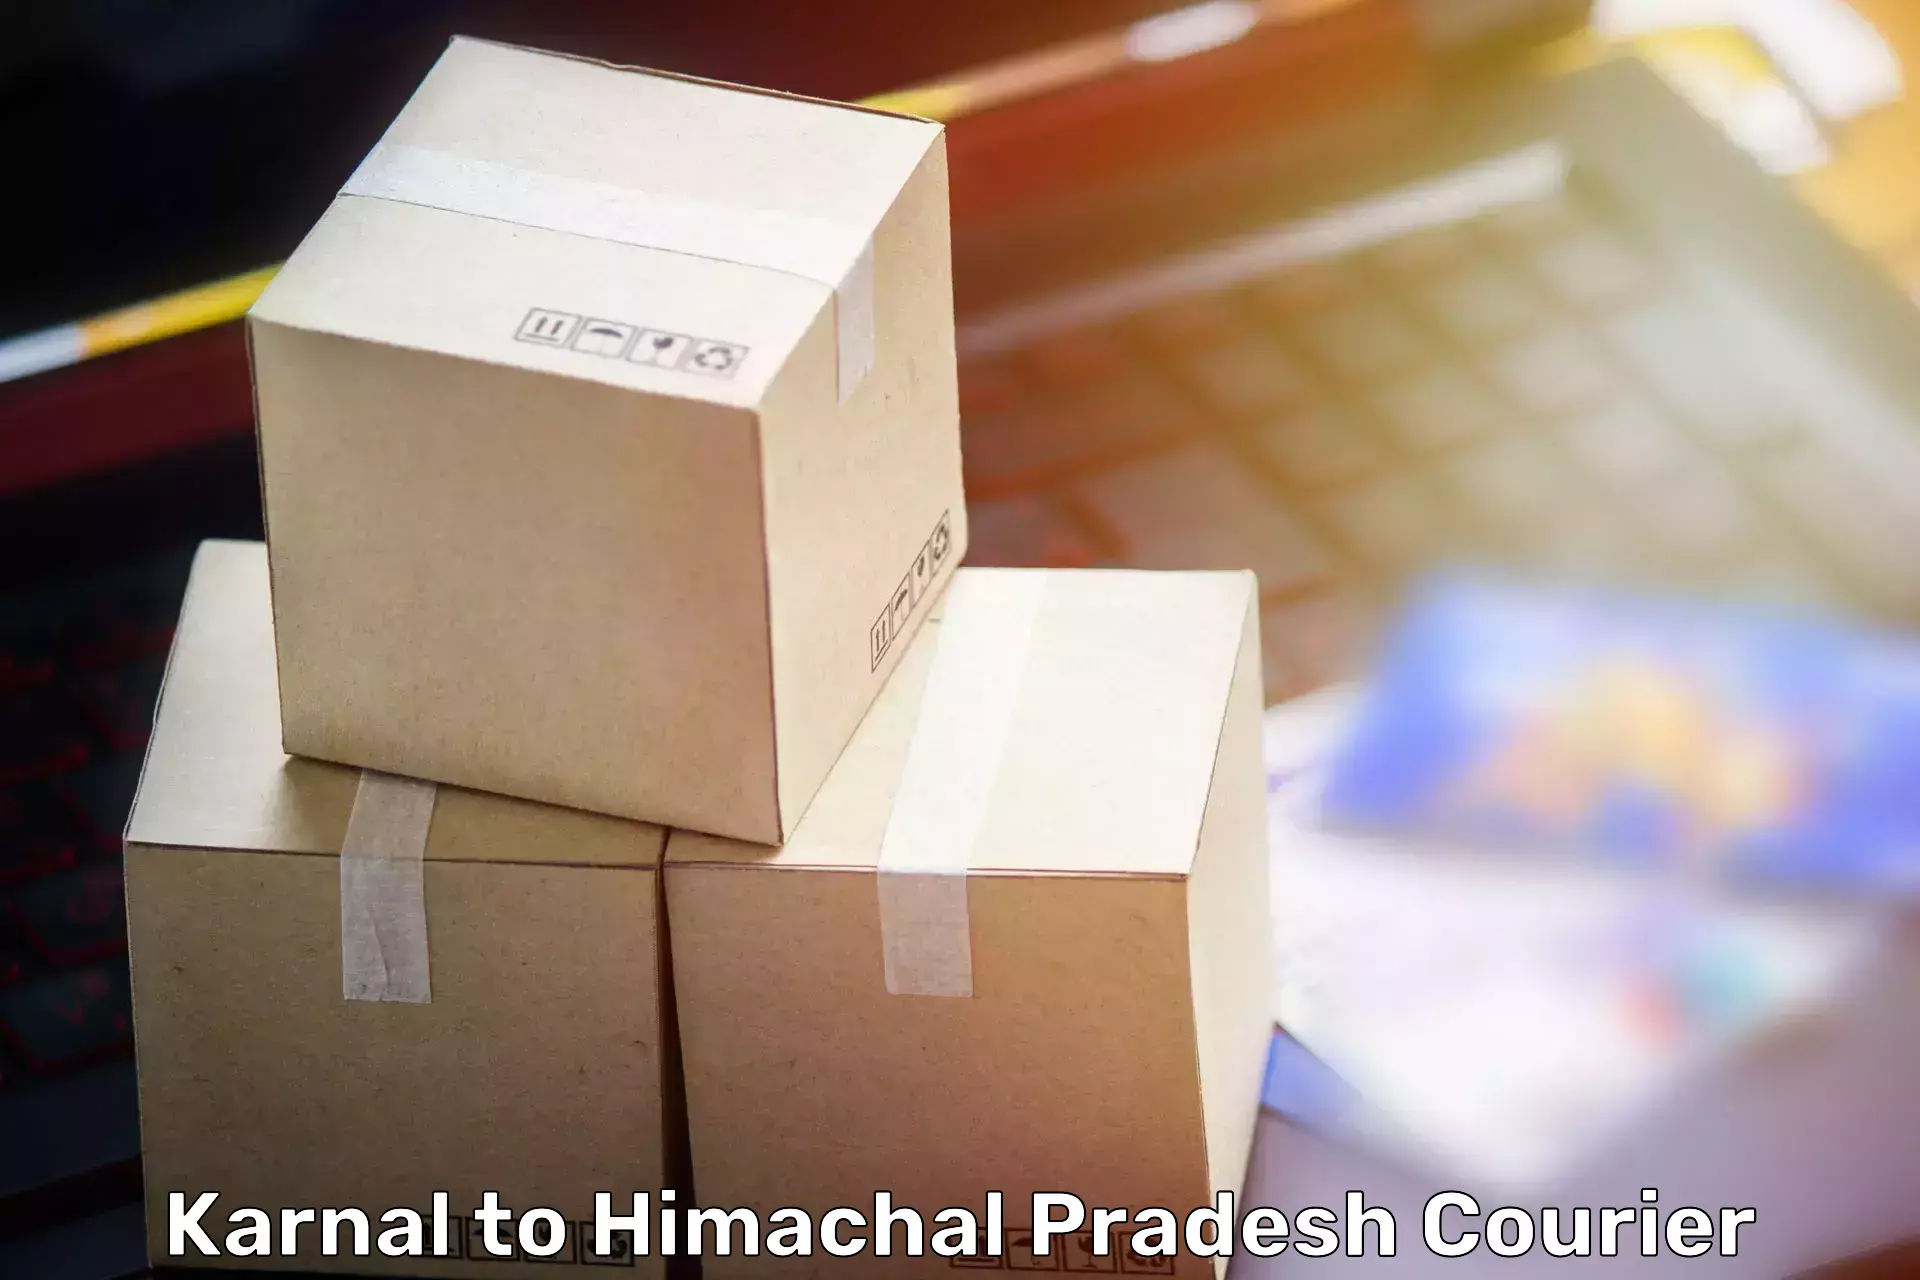 Stress-free household moving Karnal to Himachal Pradesh